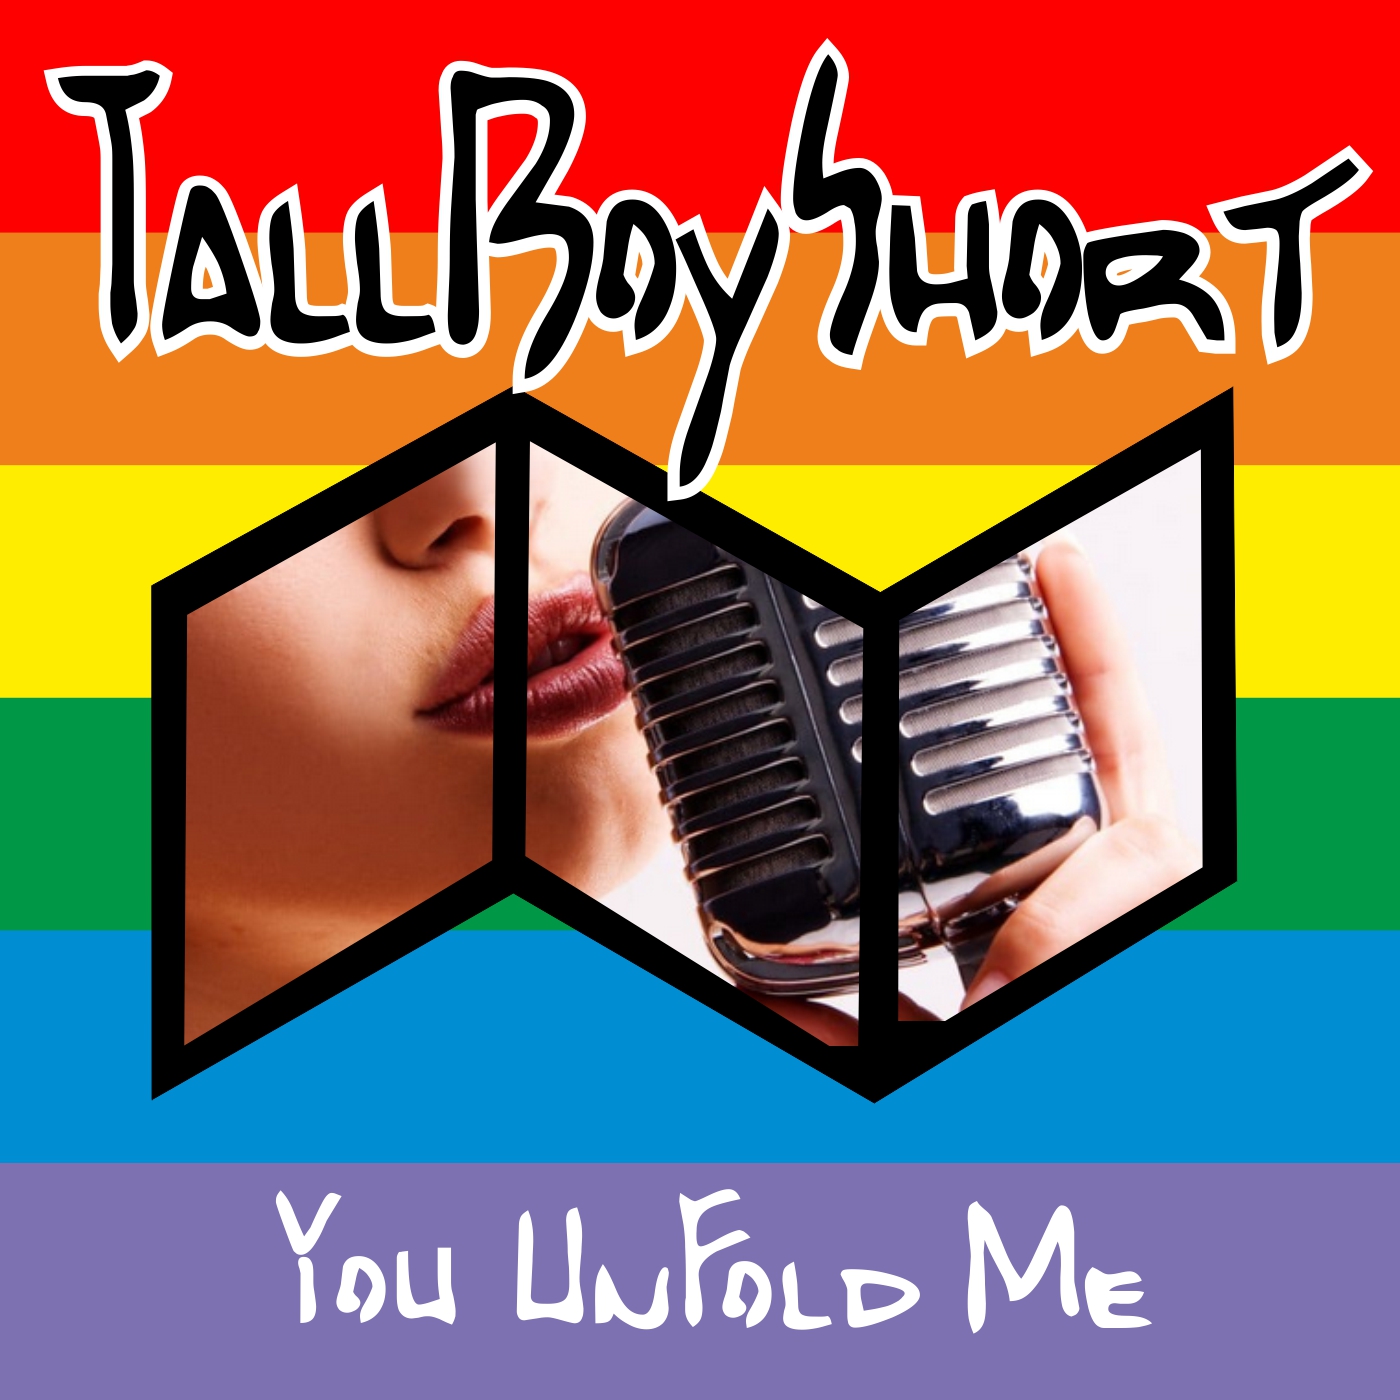 TallBoyShort You UnFold Me